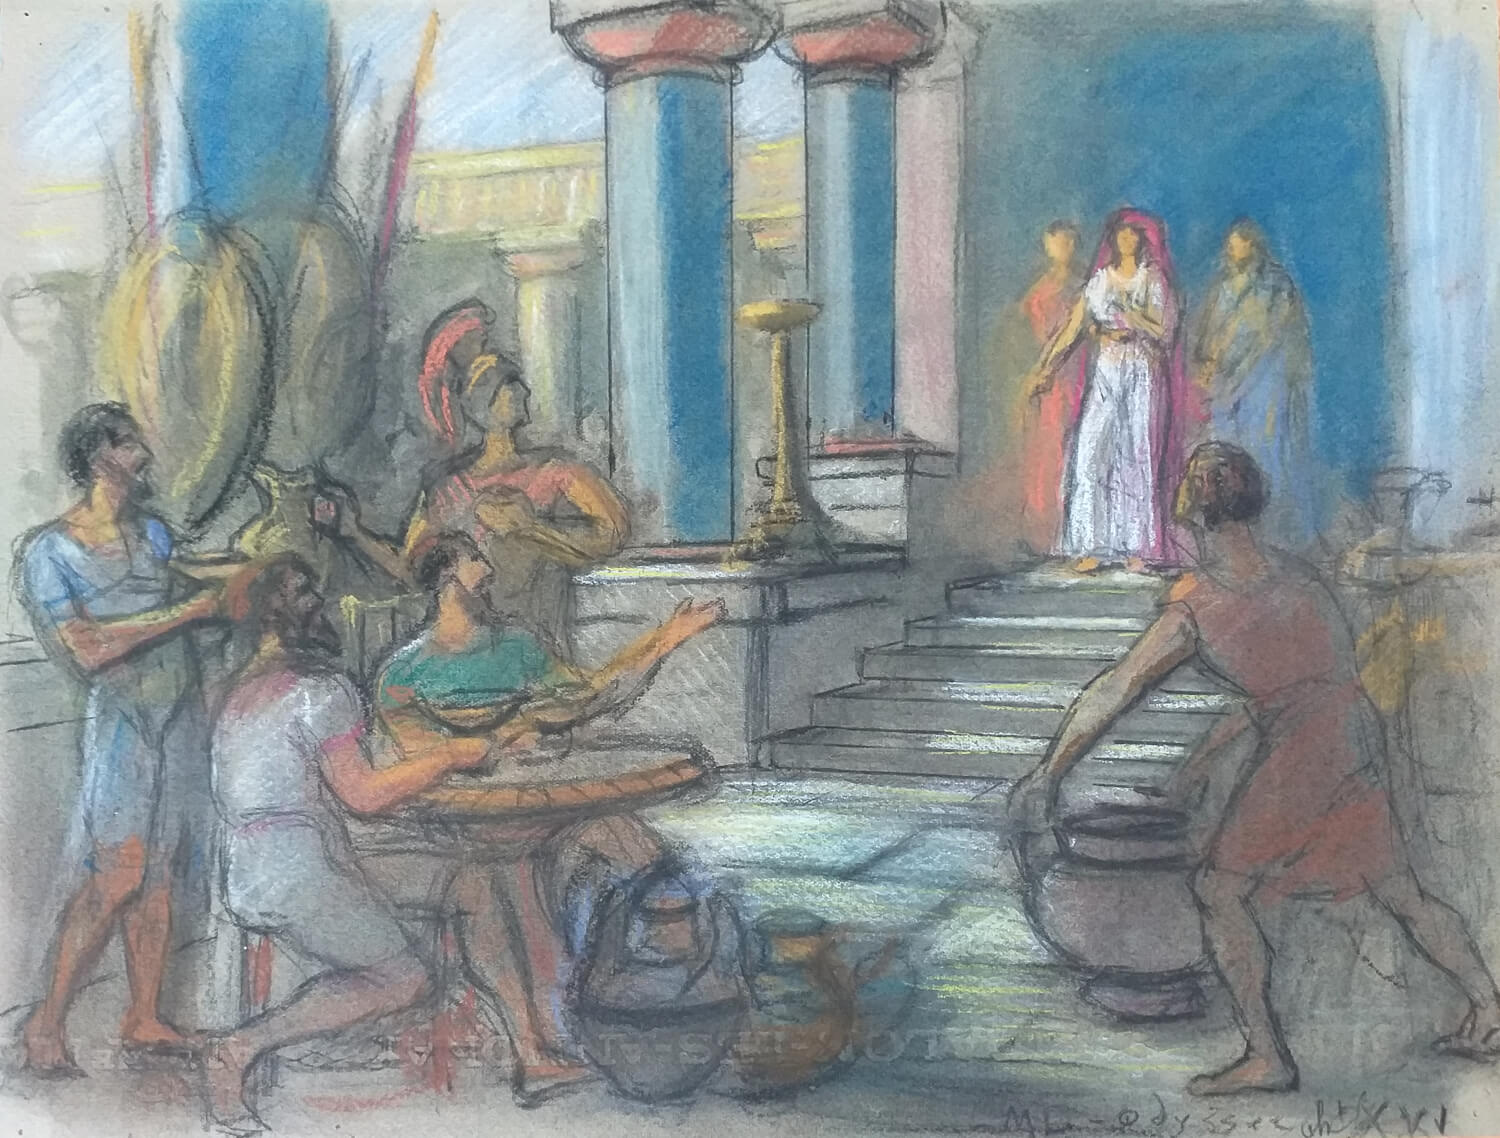 Les retrouvailles d'Ulysse et Télémaque chez Eumée. Télémaque est la figure blanche en haut des marches, et Ulysse le personnage qui se trouve à gauche derrière les gens attablés, et qui porte un casque.